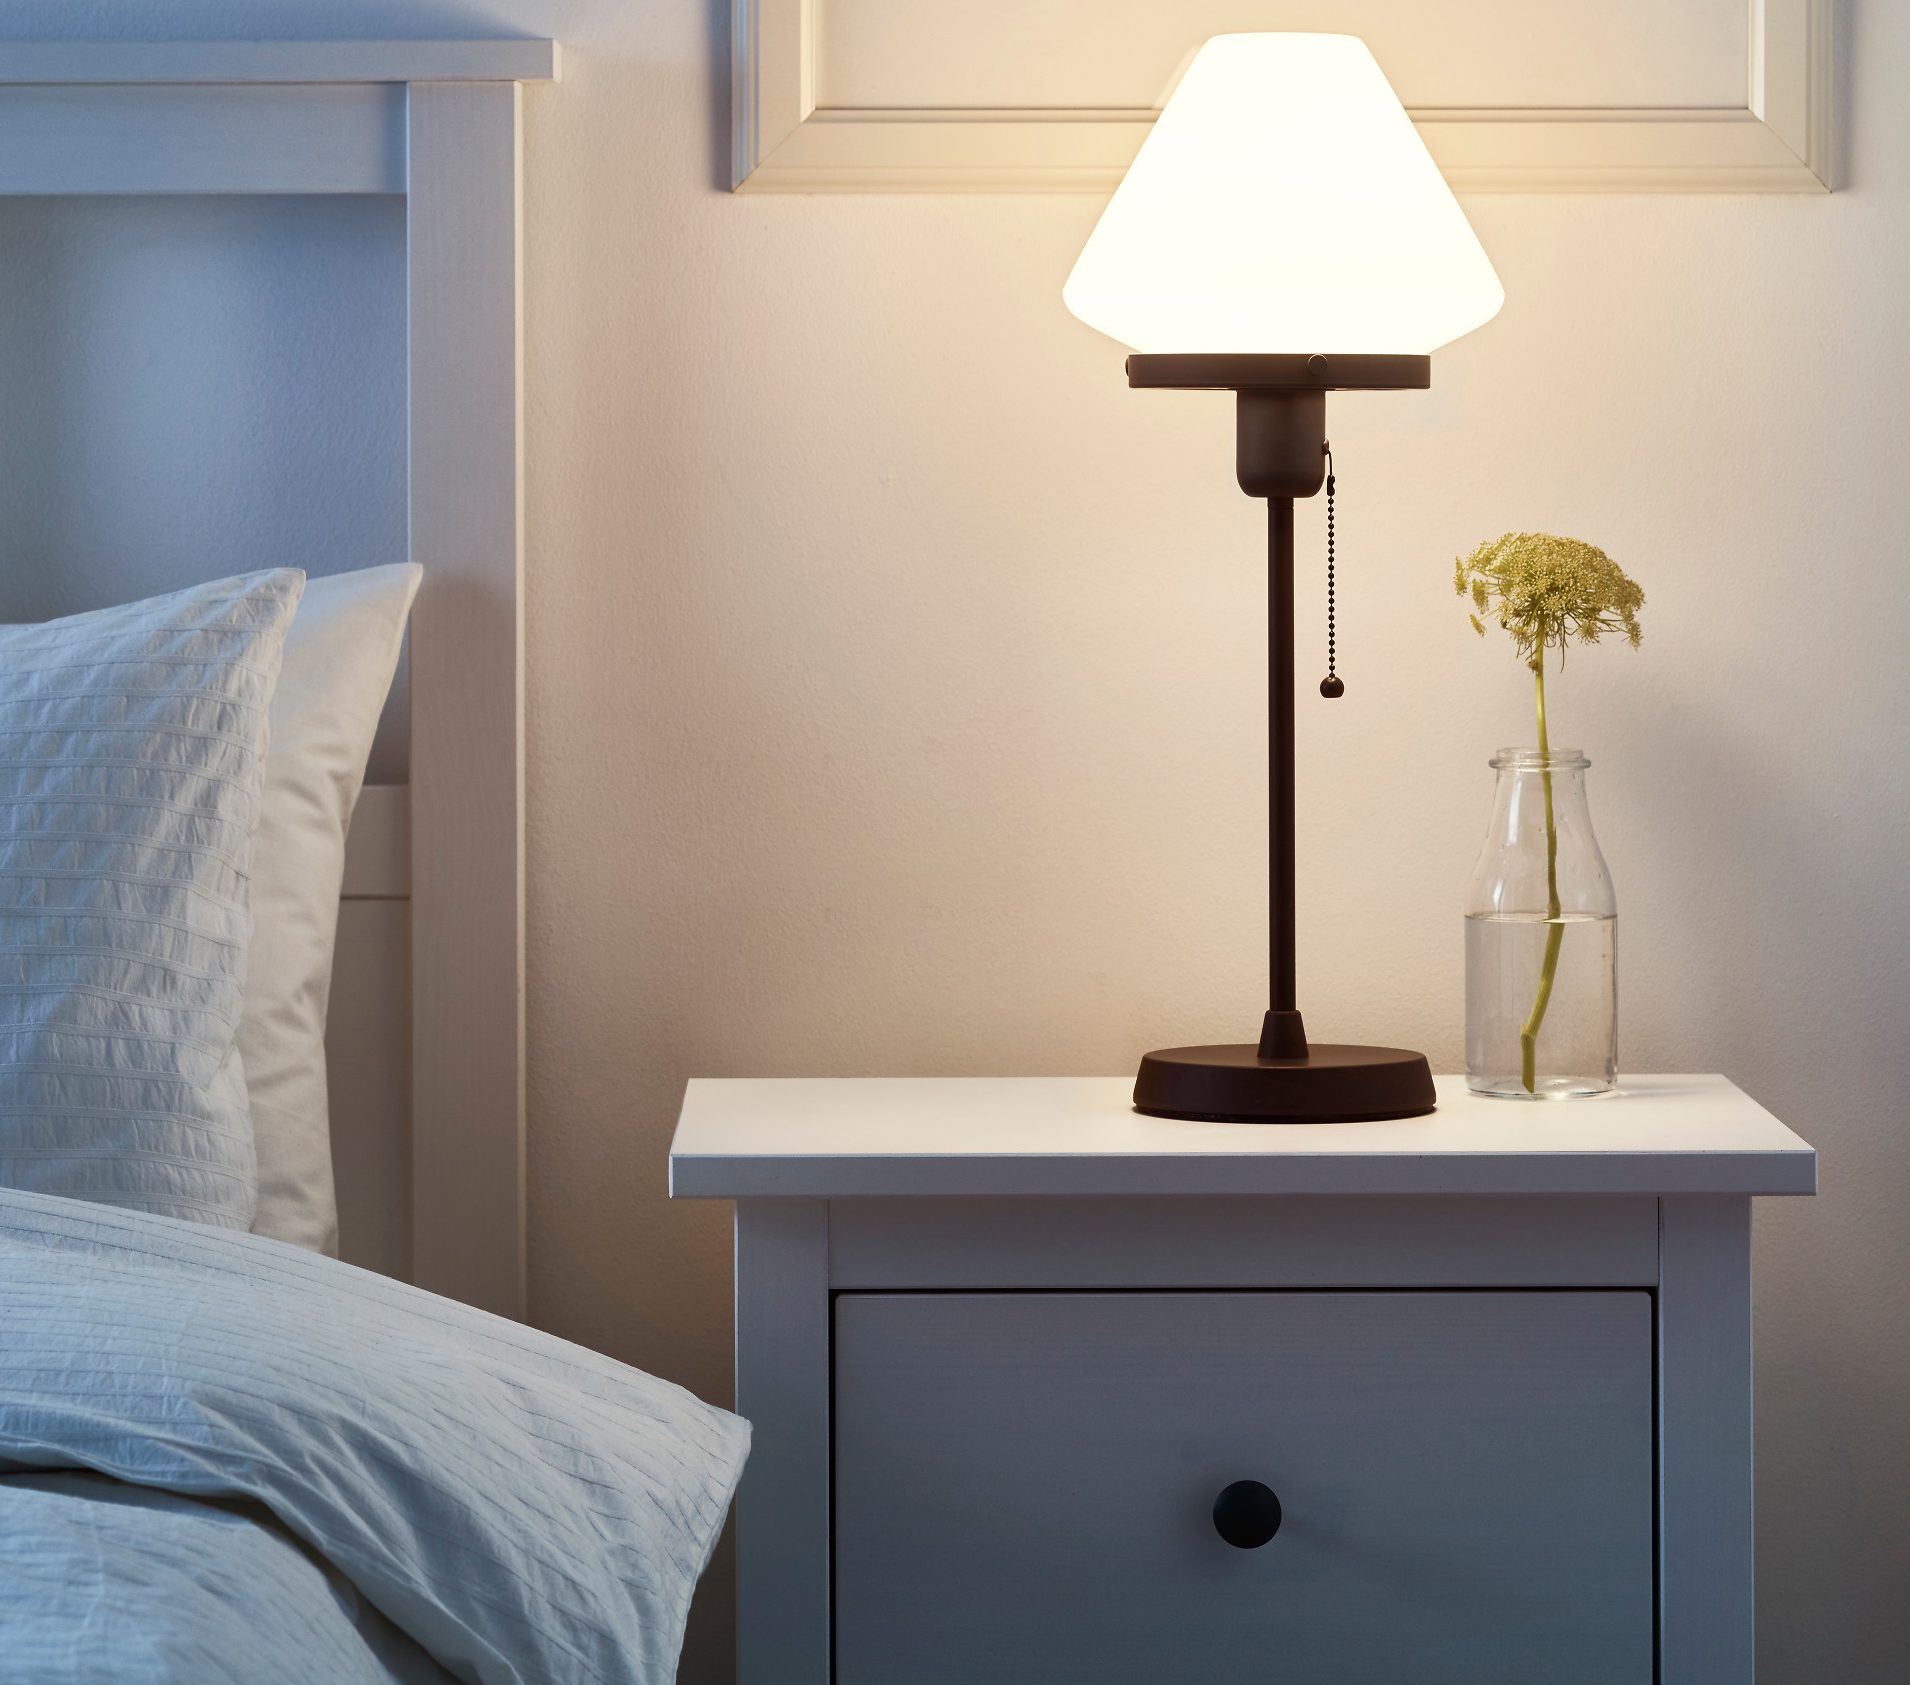 Kenali 5 manfaat lain lampu tidur, gak cuma sebagai penerang ruangan